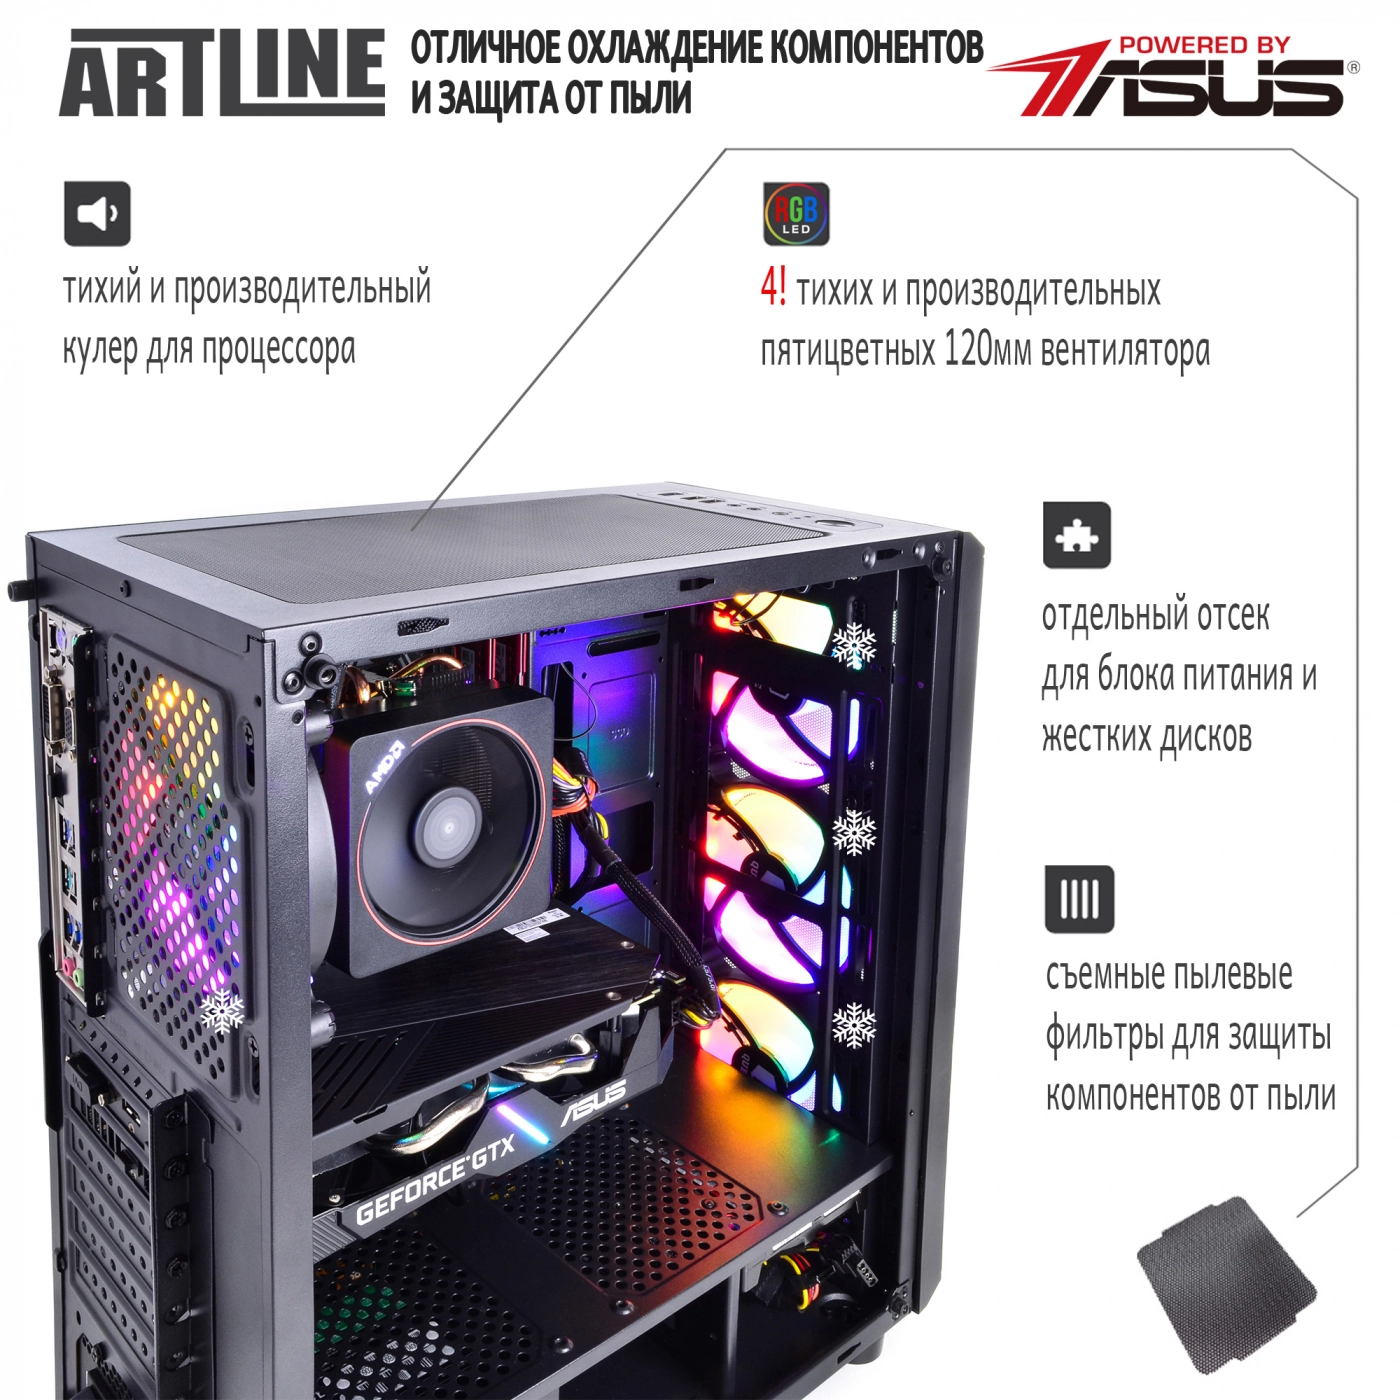 Купить Компьютер ARTLINE Gaming X48v07 - фото 3